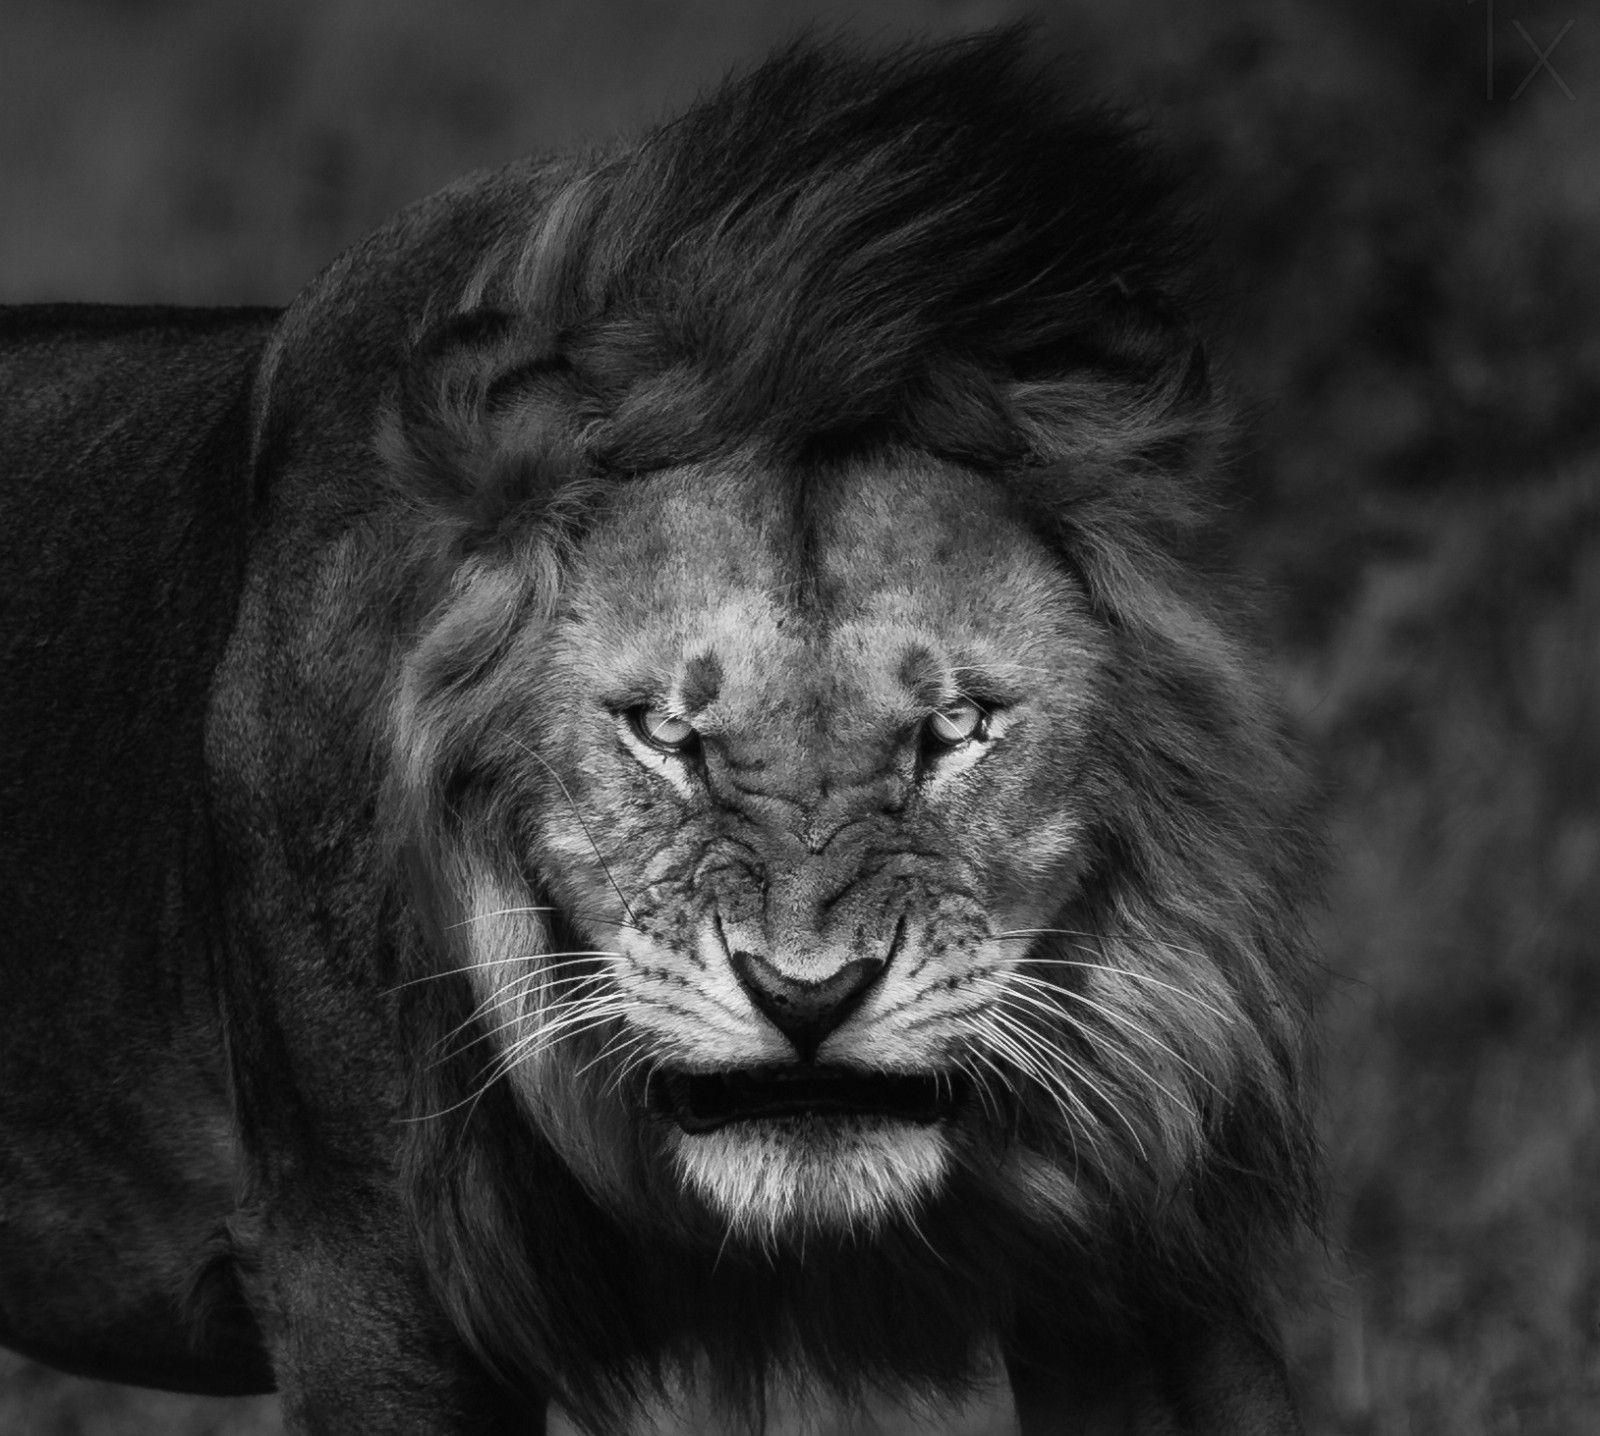 Sự kiêu hãnh và uy nghi của chúa sơn lâm khiến cho những hình nền về sư tử luôn được yêu mến. Các bức tranh này sẽ mang đến cảm giác tự tin và tinh thần chiến đấu cho bạn.